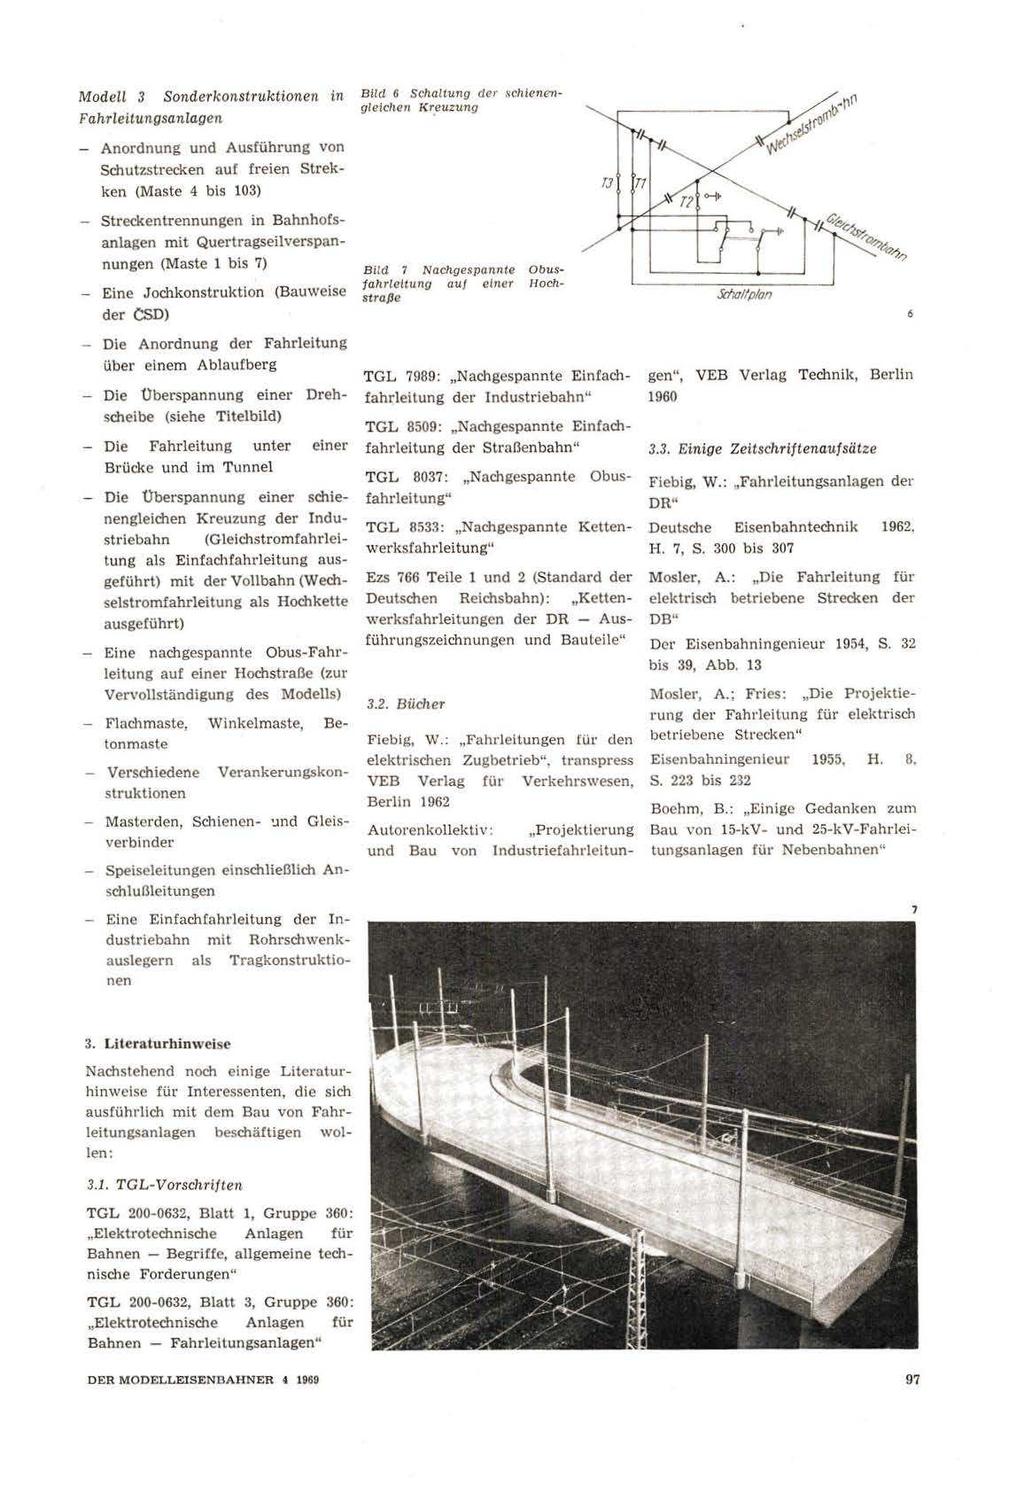 Modell 3 Fahrleitungsanlagen Sonderkonstruktionen in Anordnung und Ausführung von Schutzstrecken auf freien Strekken (Maste 4 bis 103) - Streckentrennungen in Bahnhofsanlagen mit